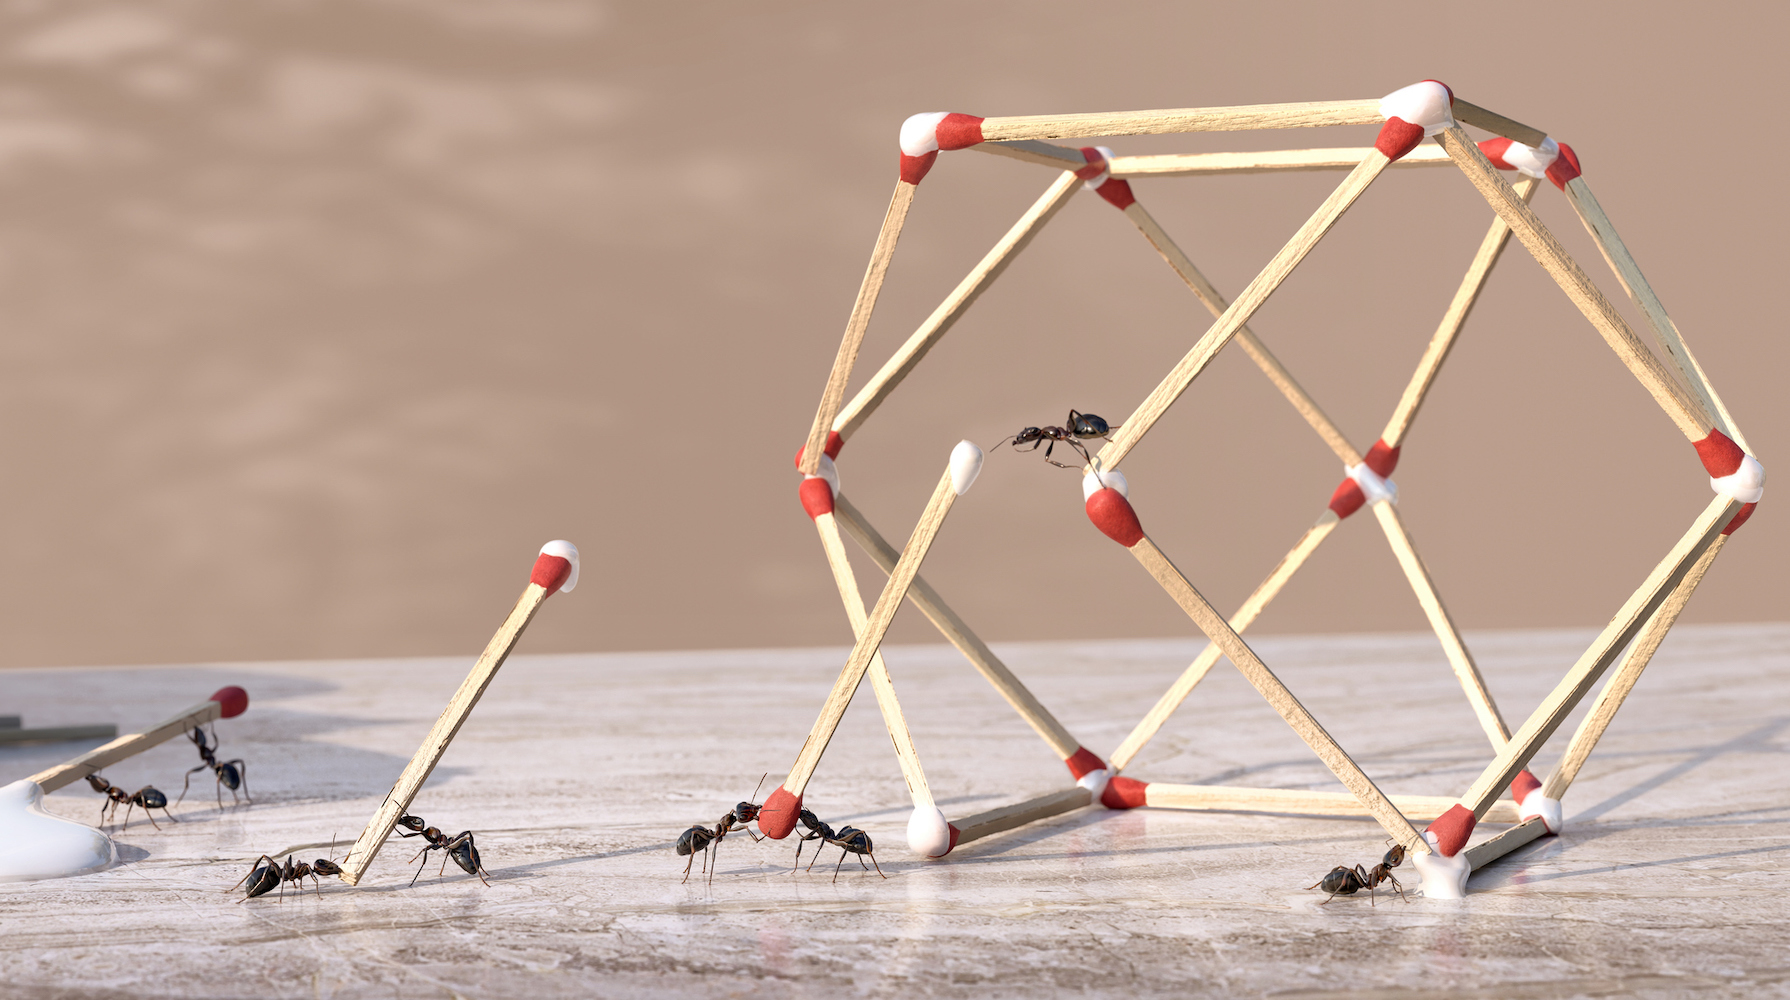 Un grupo de hormigas trabajando en equipo para formar una escultura geométrica tridimensional con pegamento y cerillas. Las hormigas sumergen los extremos de los fósforos en el pegamento que gotea de una botella de pegamento y los colocan en posición para formar la forma en una encimera de mármol.